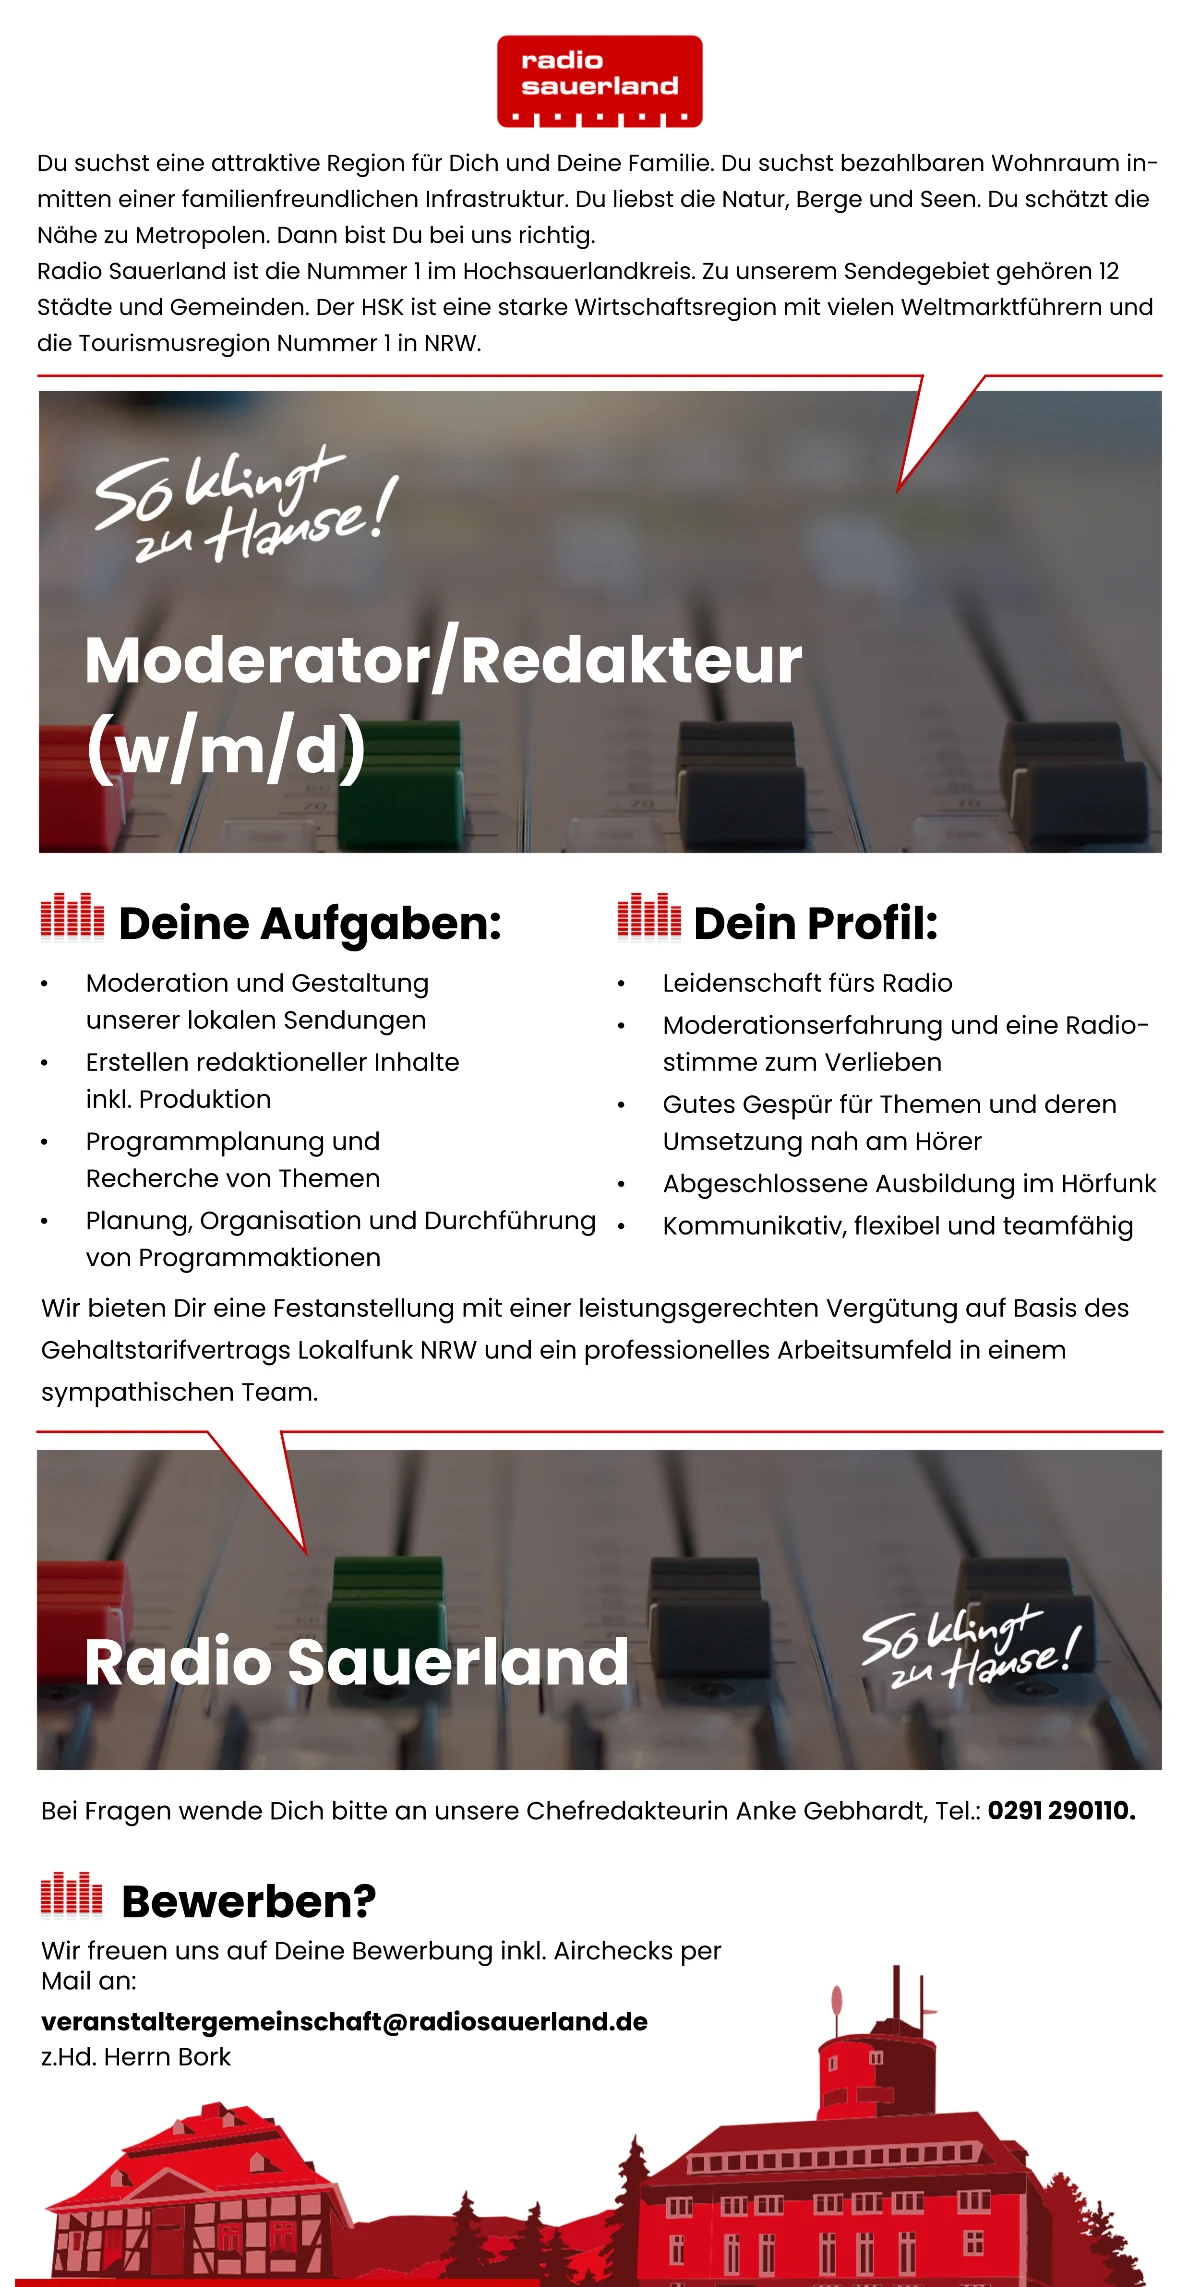 Radio Sauerland sucht Moderator/Redakteur (m/w/d)